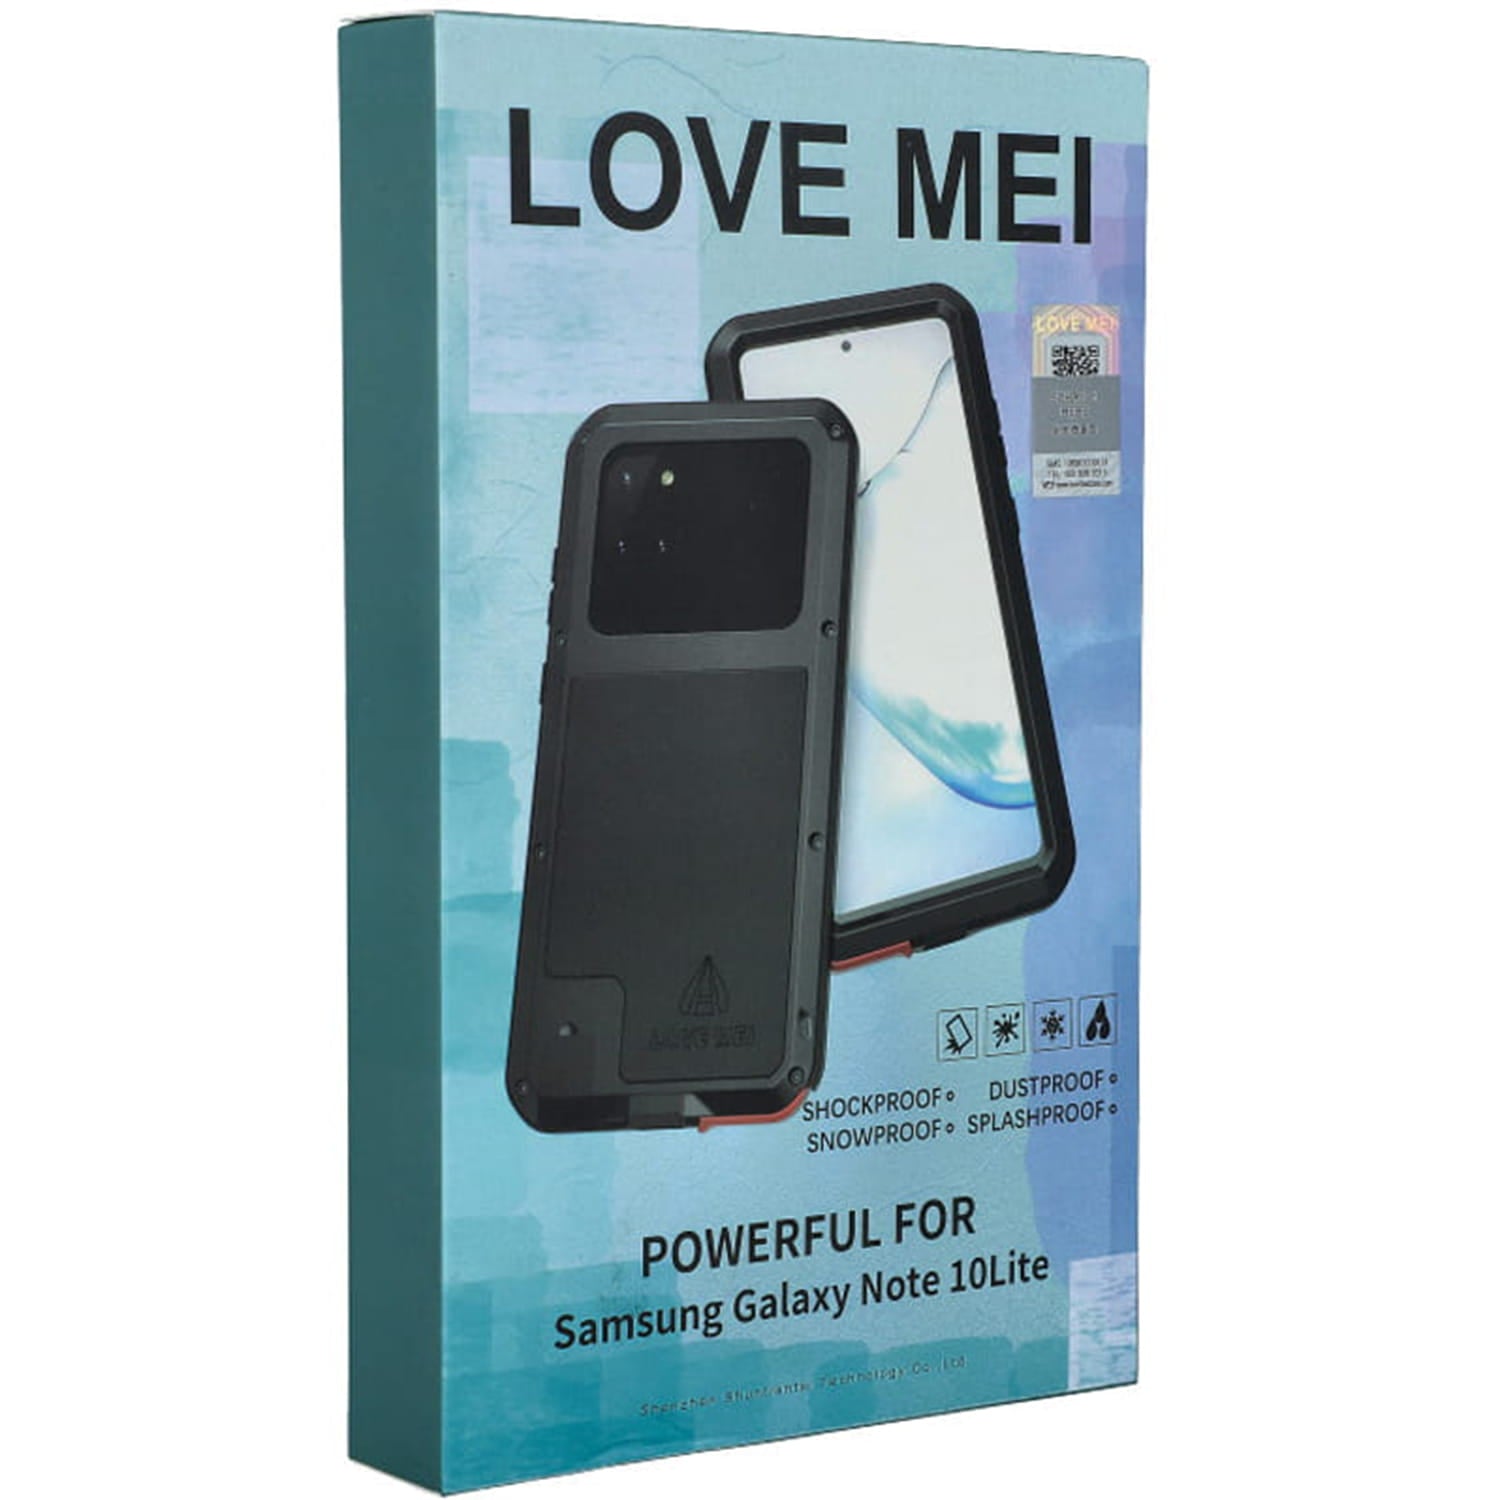 Gepanzerte Schutzhülle mit Glas für Galaxy Note 10 Lite, Love Mei Powerful, Schwarz